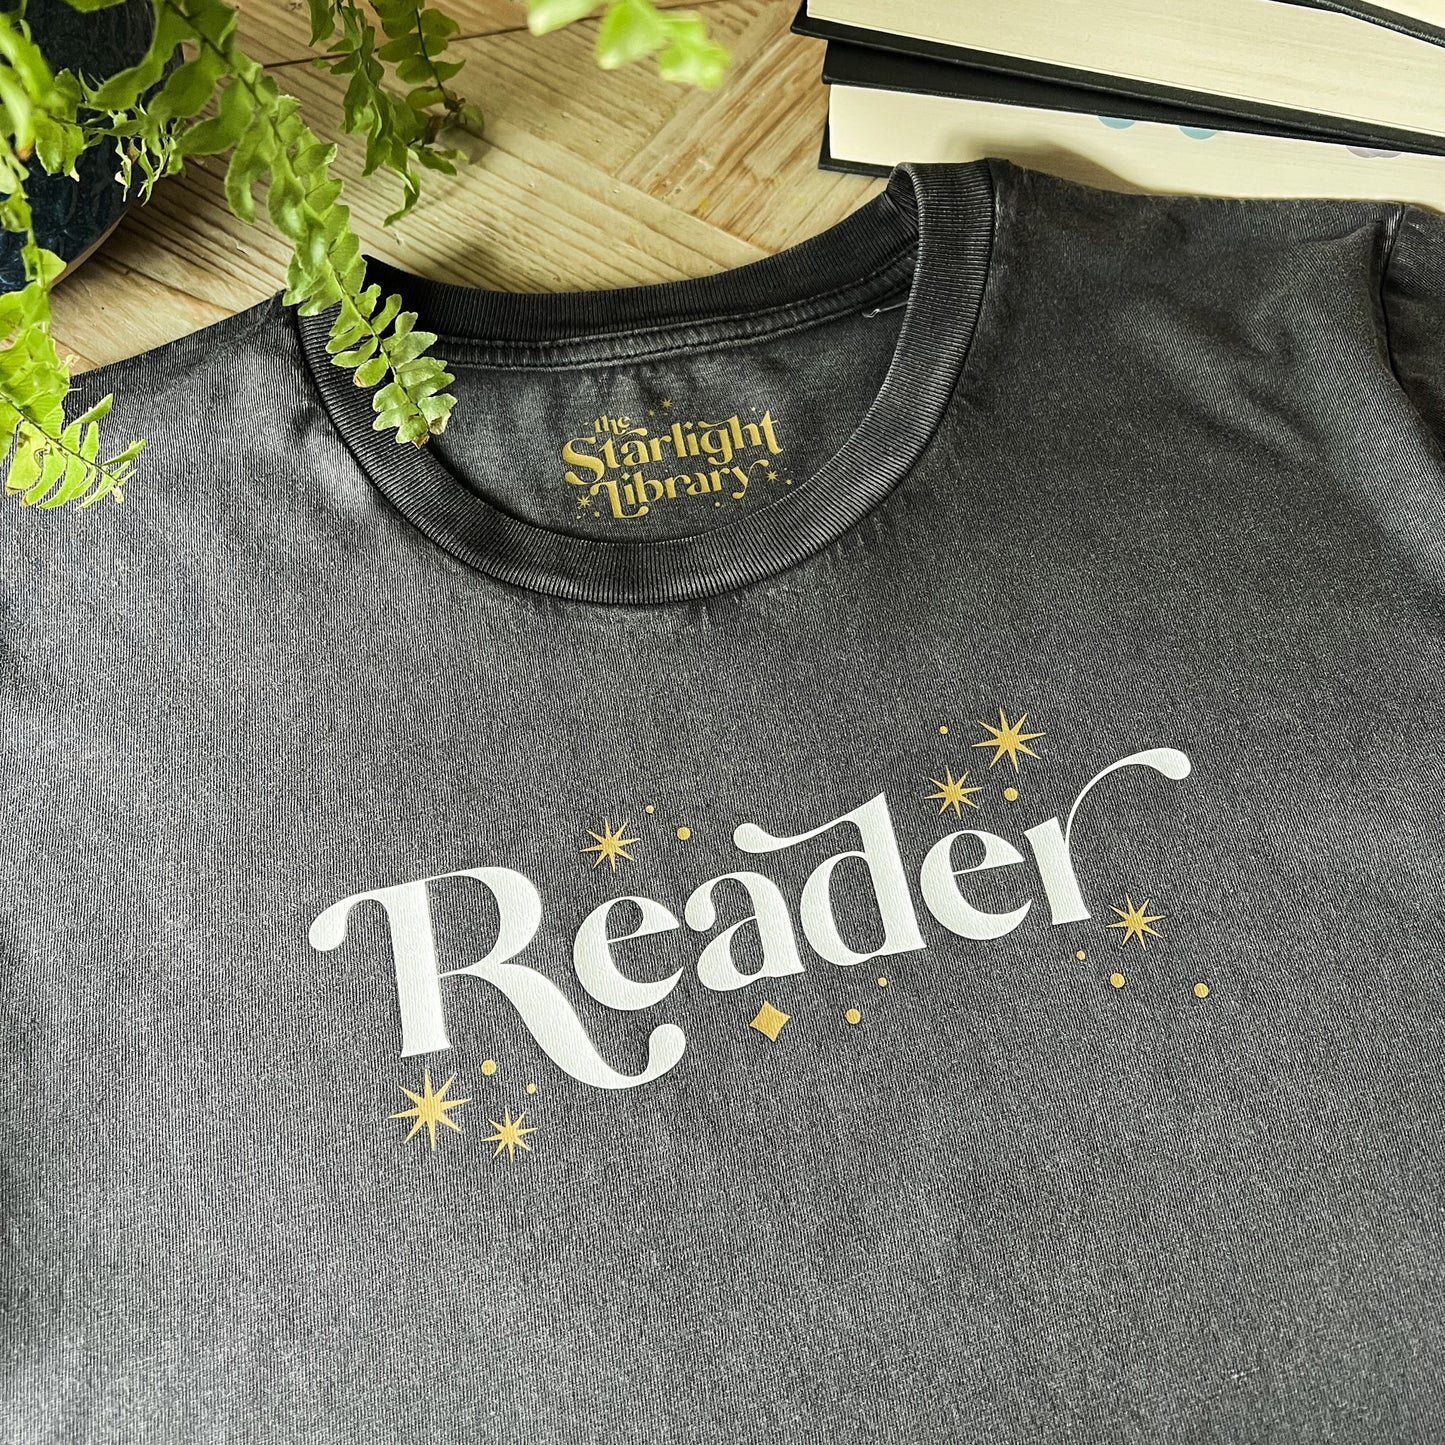 Reader T-Shirt